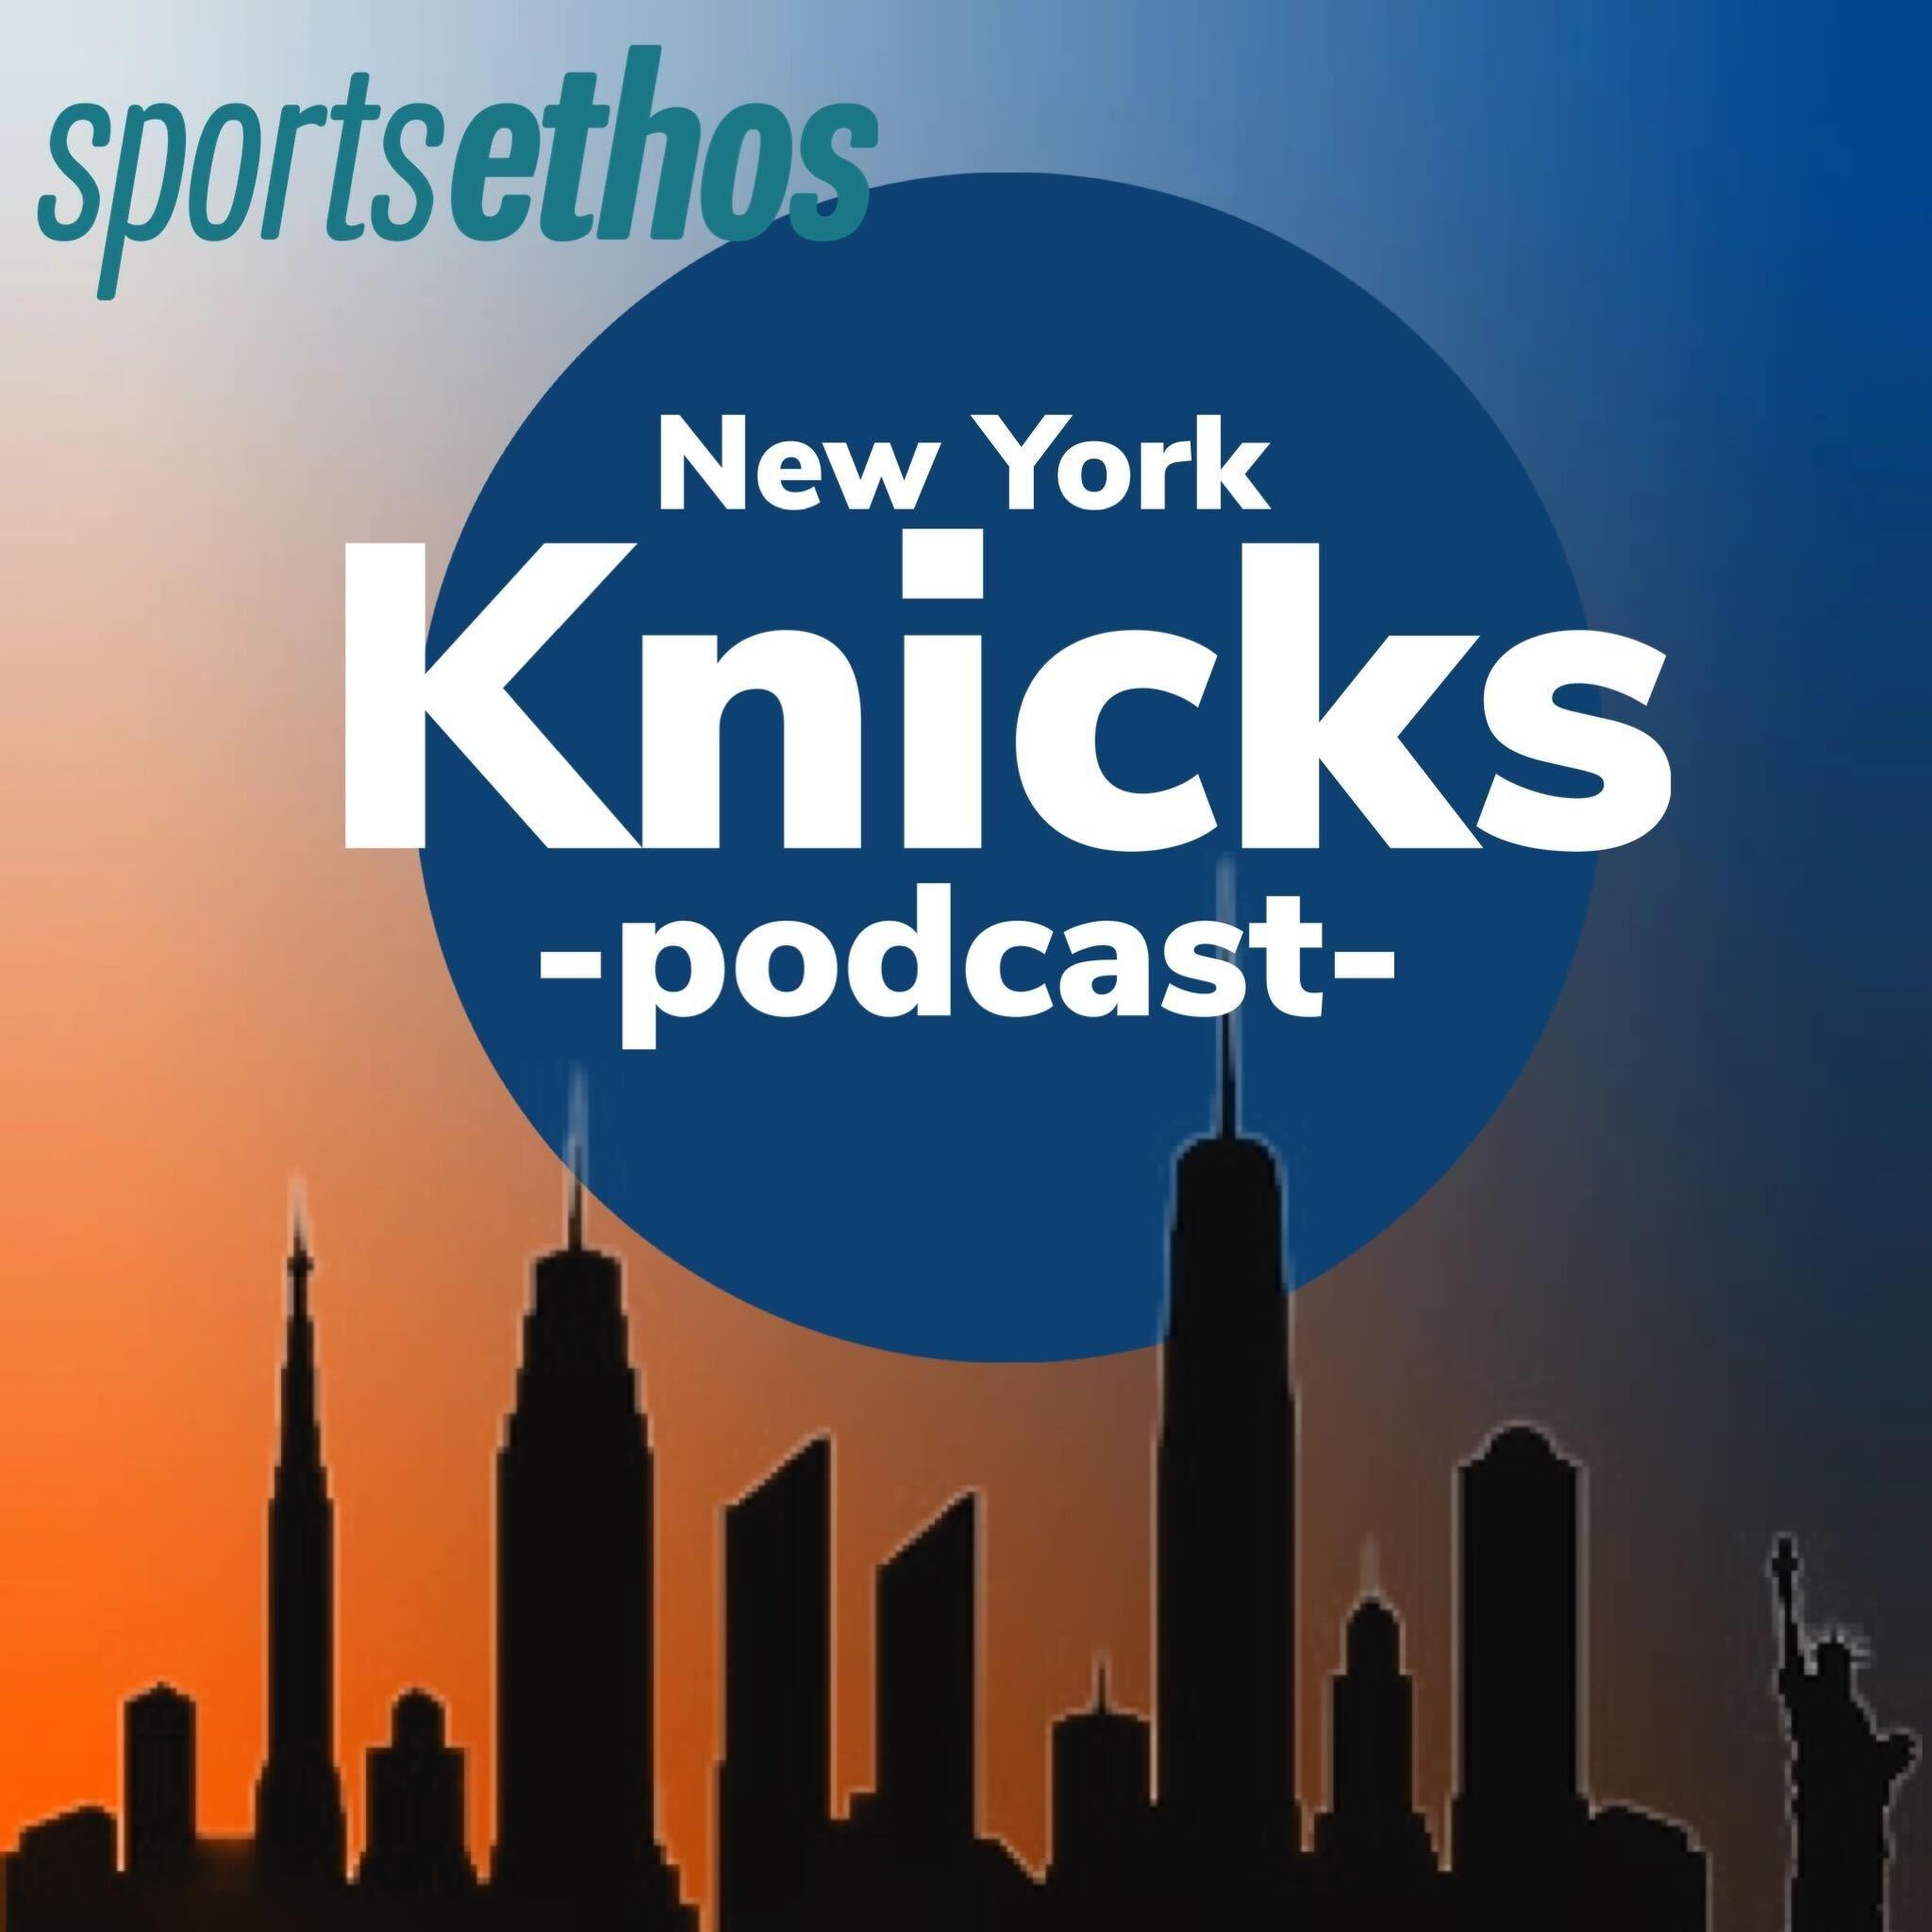 The SportsEthos New York Knicks Podcast